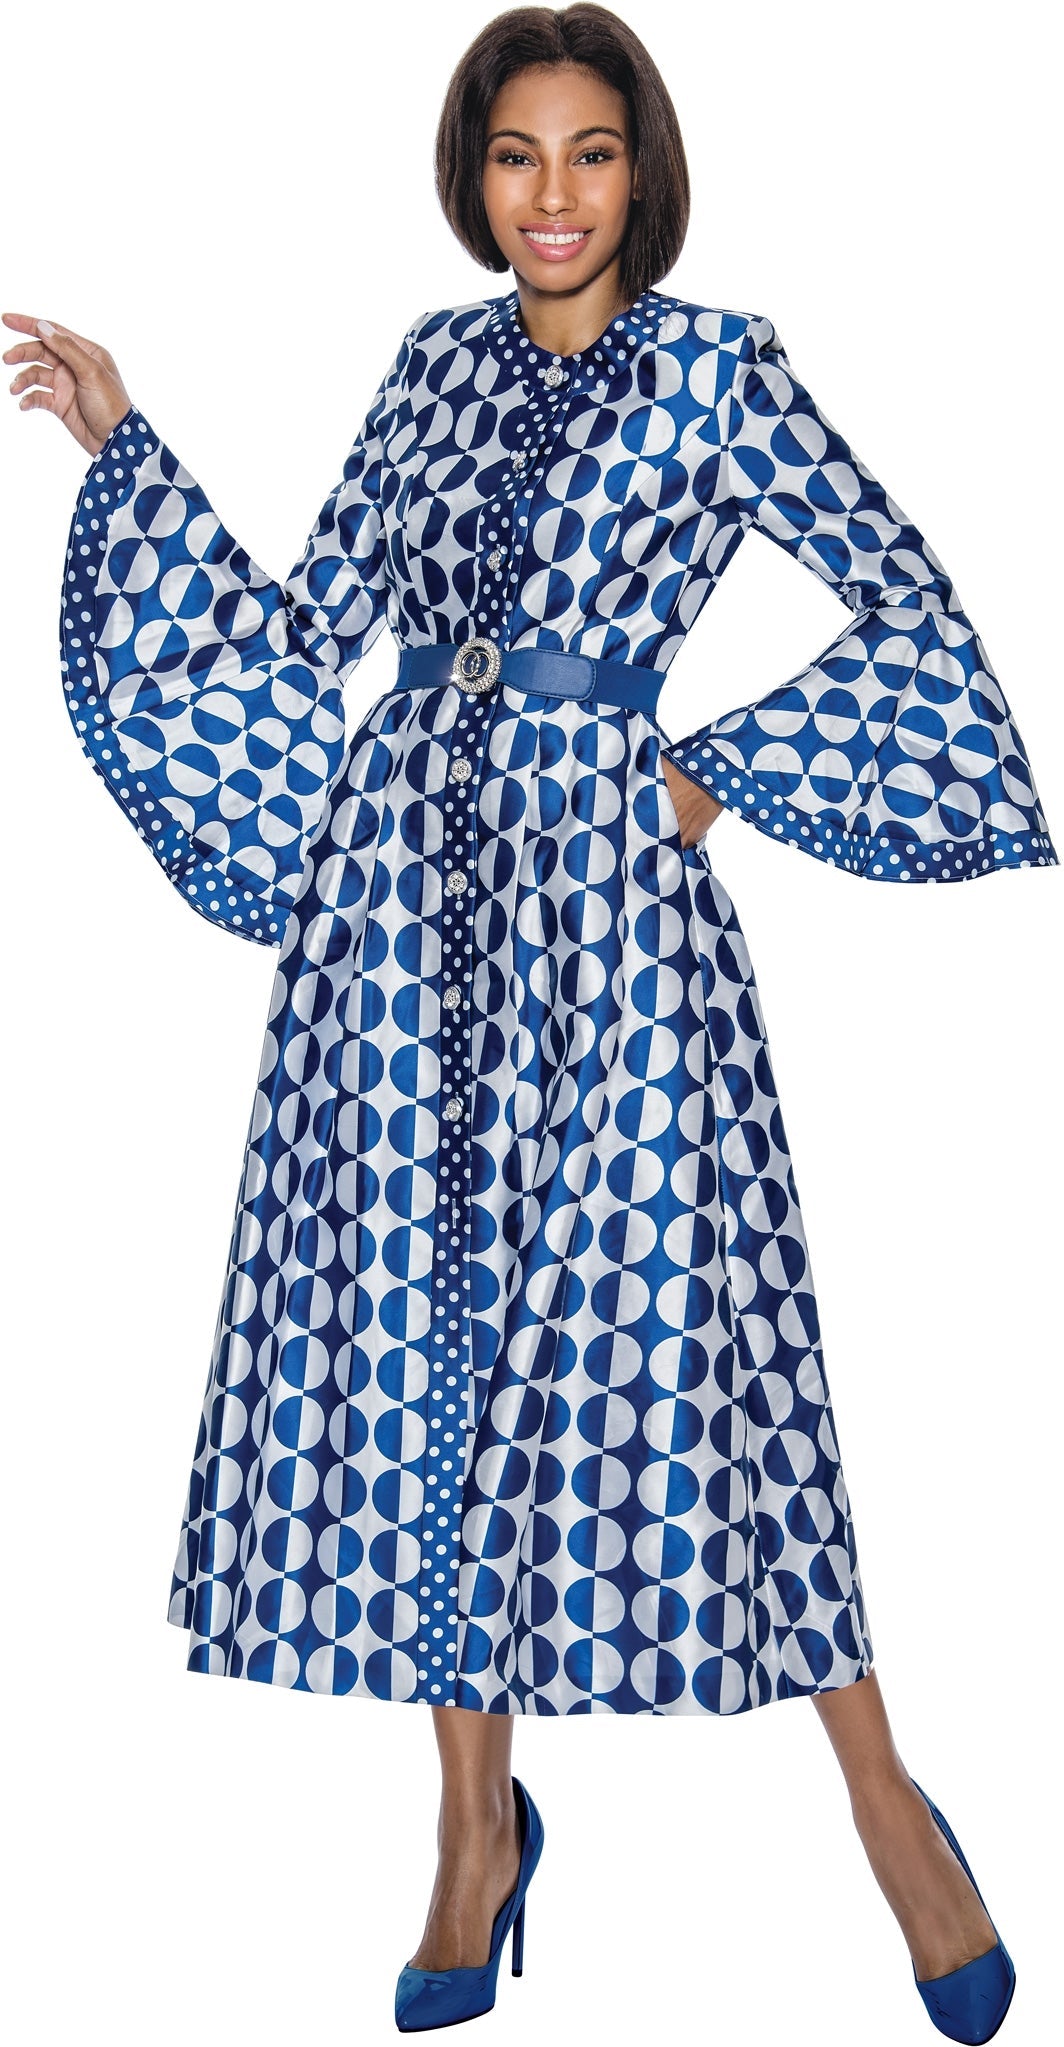 Terramina Church Dress 7071C-Royal Blue - Church Suits For Less